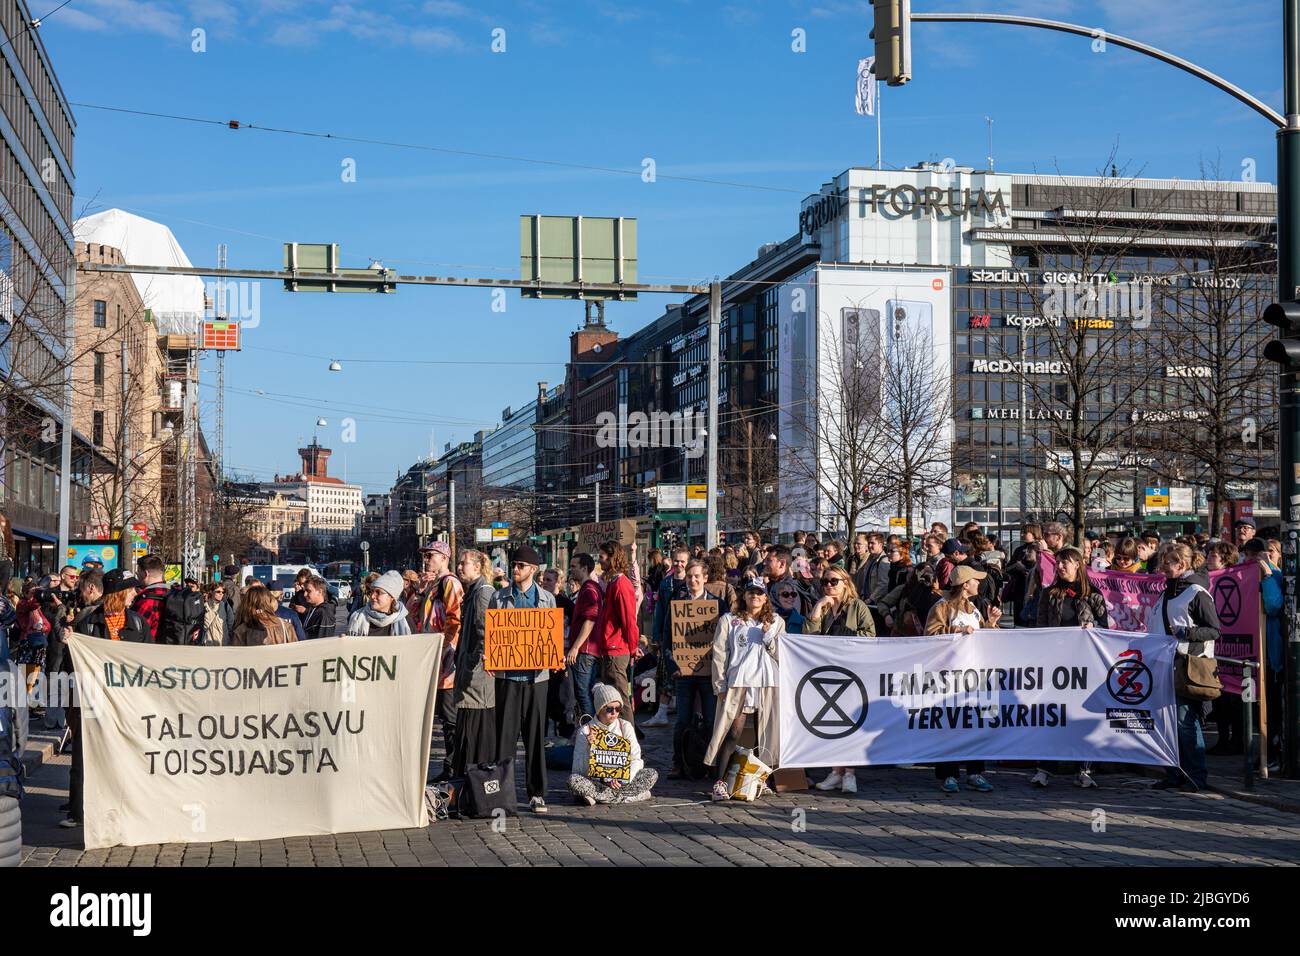 Ylikulutuskapina - Elokapina's street blocking demonstration in Mannerheimintie, Helsinki, Finland Stock Photo